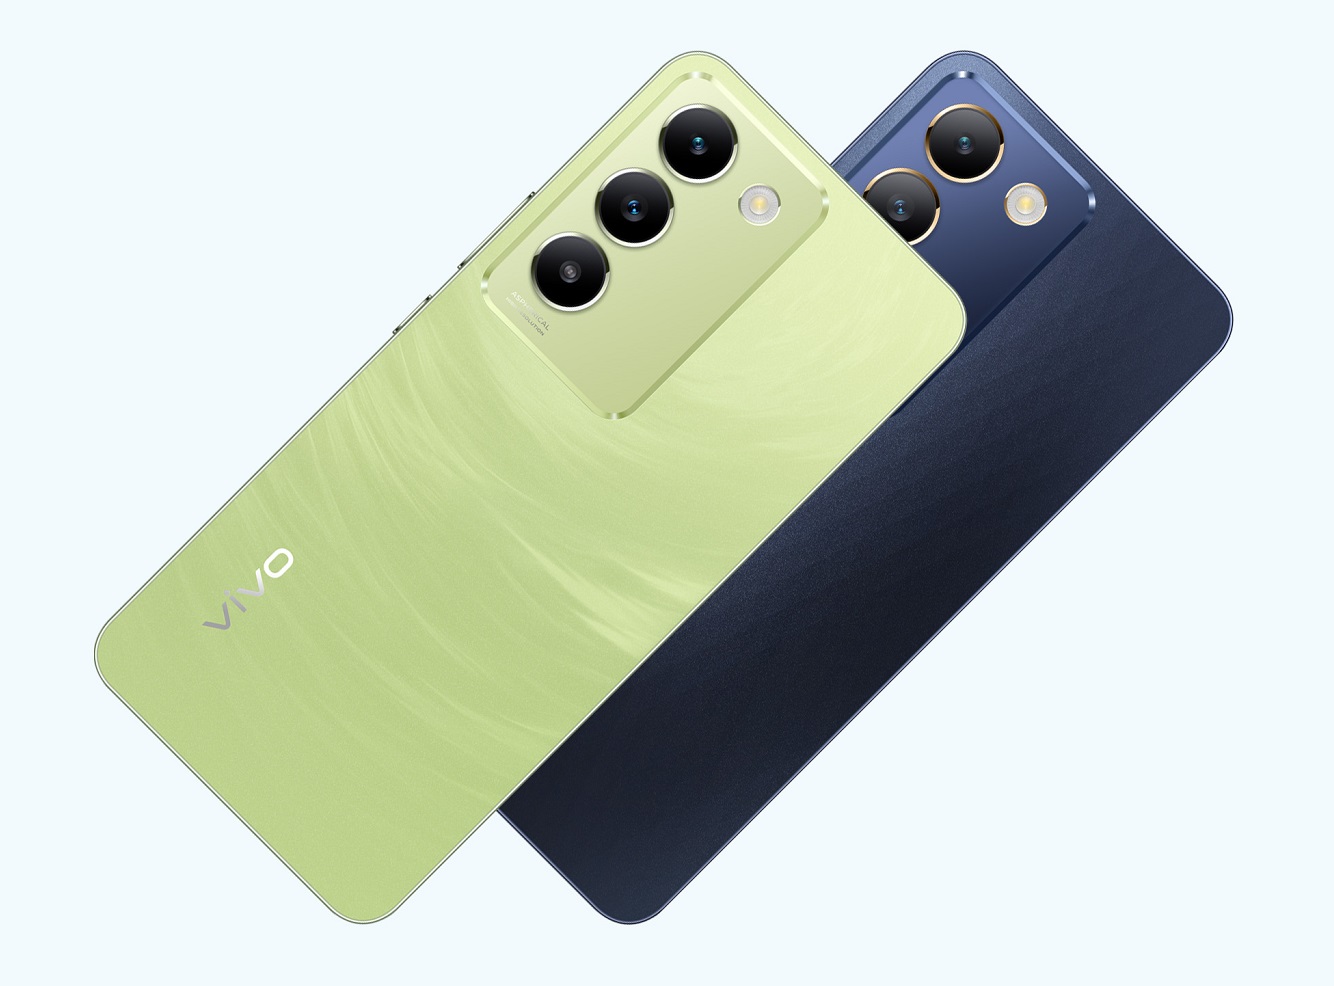 Vivo представила смартфон Y100 4G со скоростной зарядкой 80 Вт